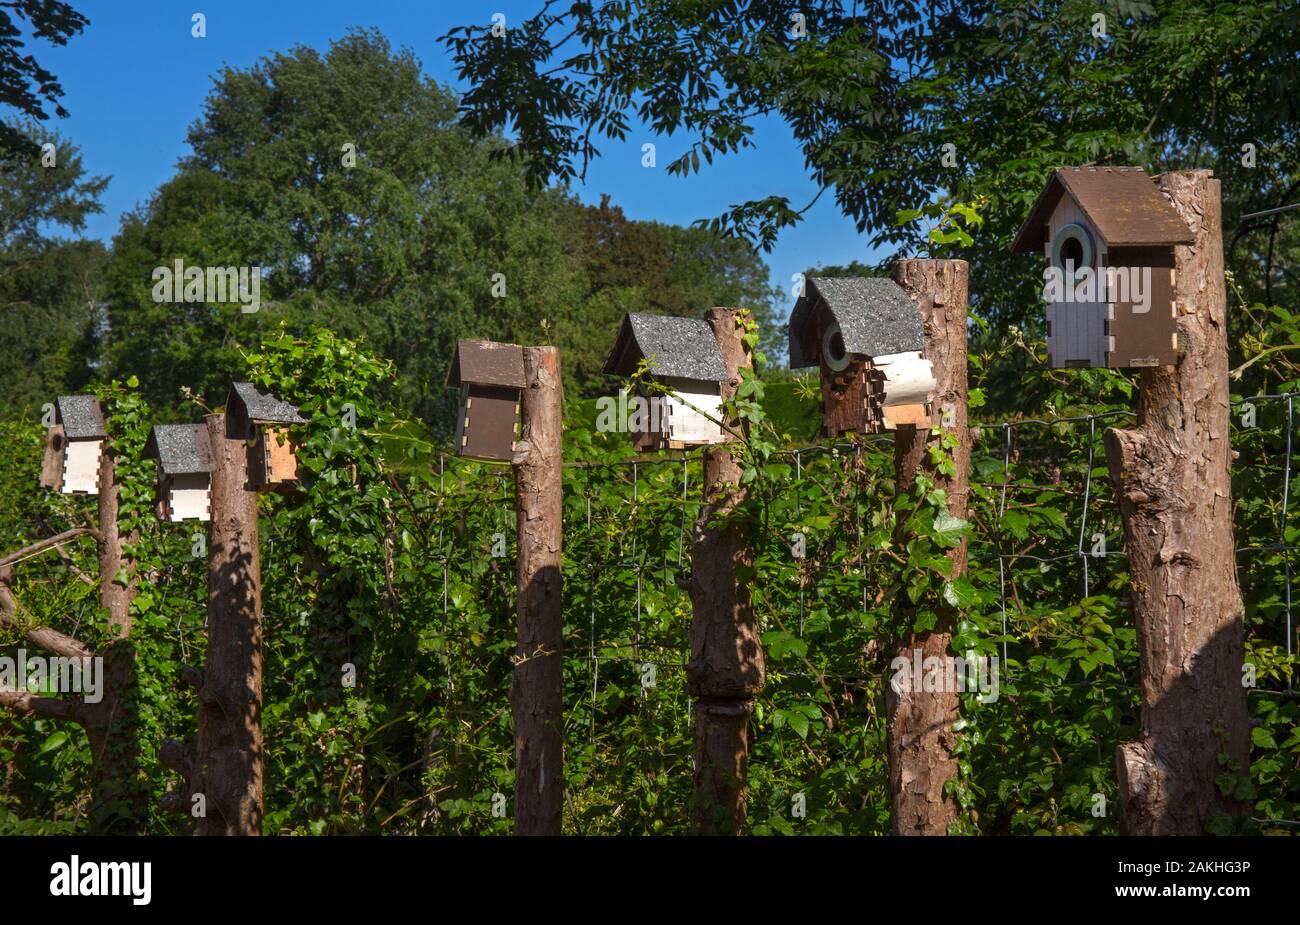 Line of wooden bird boxes in english garden,England Stock Photo